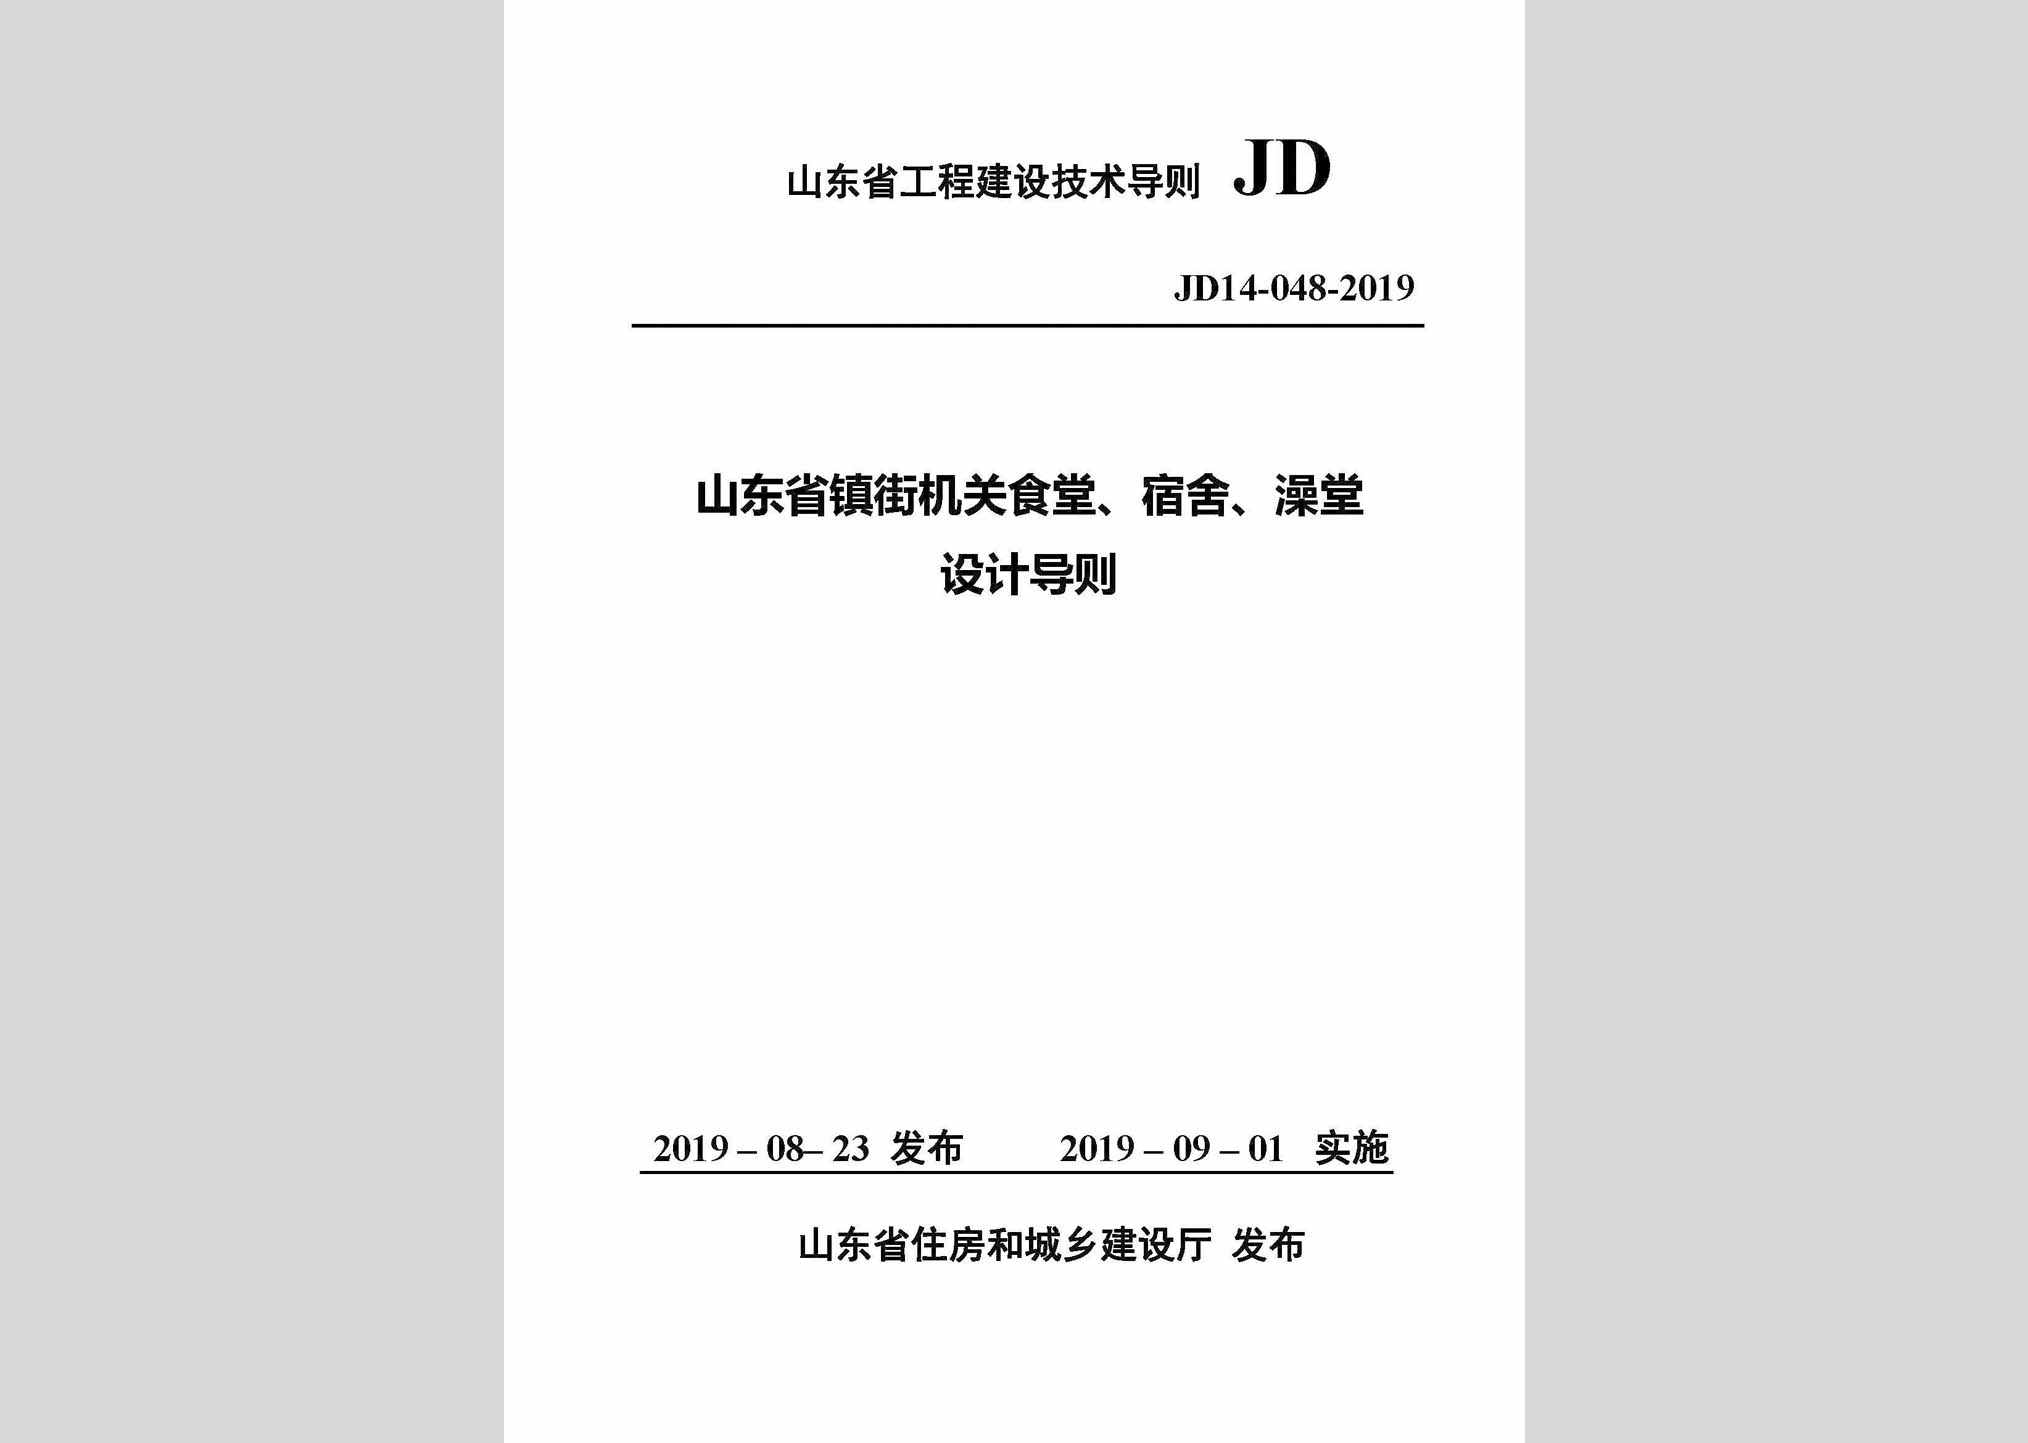 JD14-048-2019：山东省镇街机关食堂、宿舍、澡堂设计导则